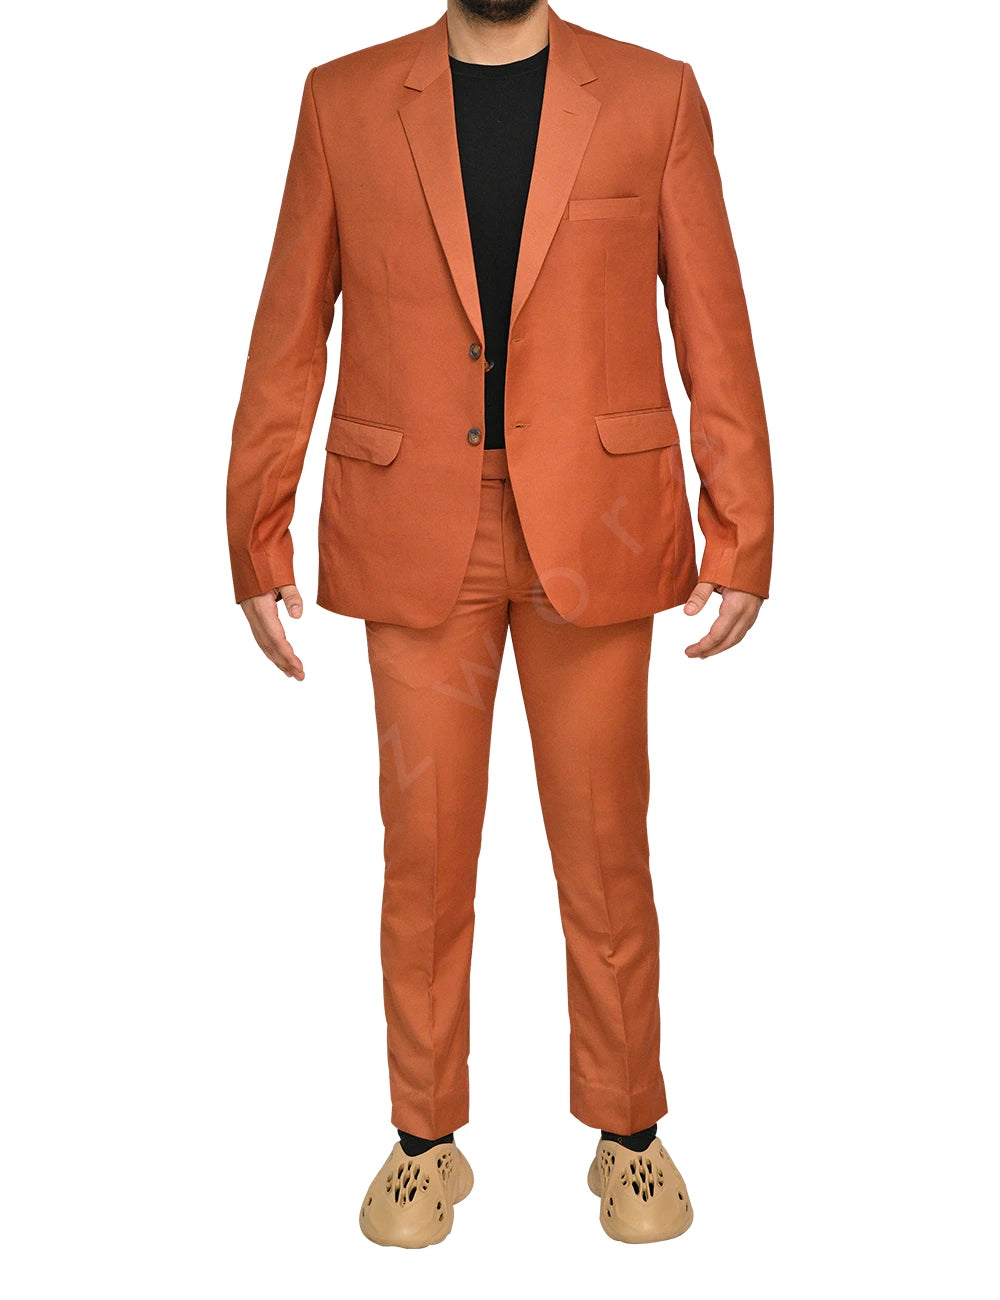 Mens Orange Suit